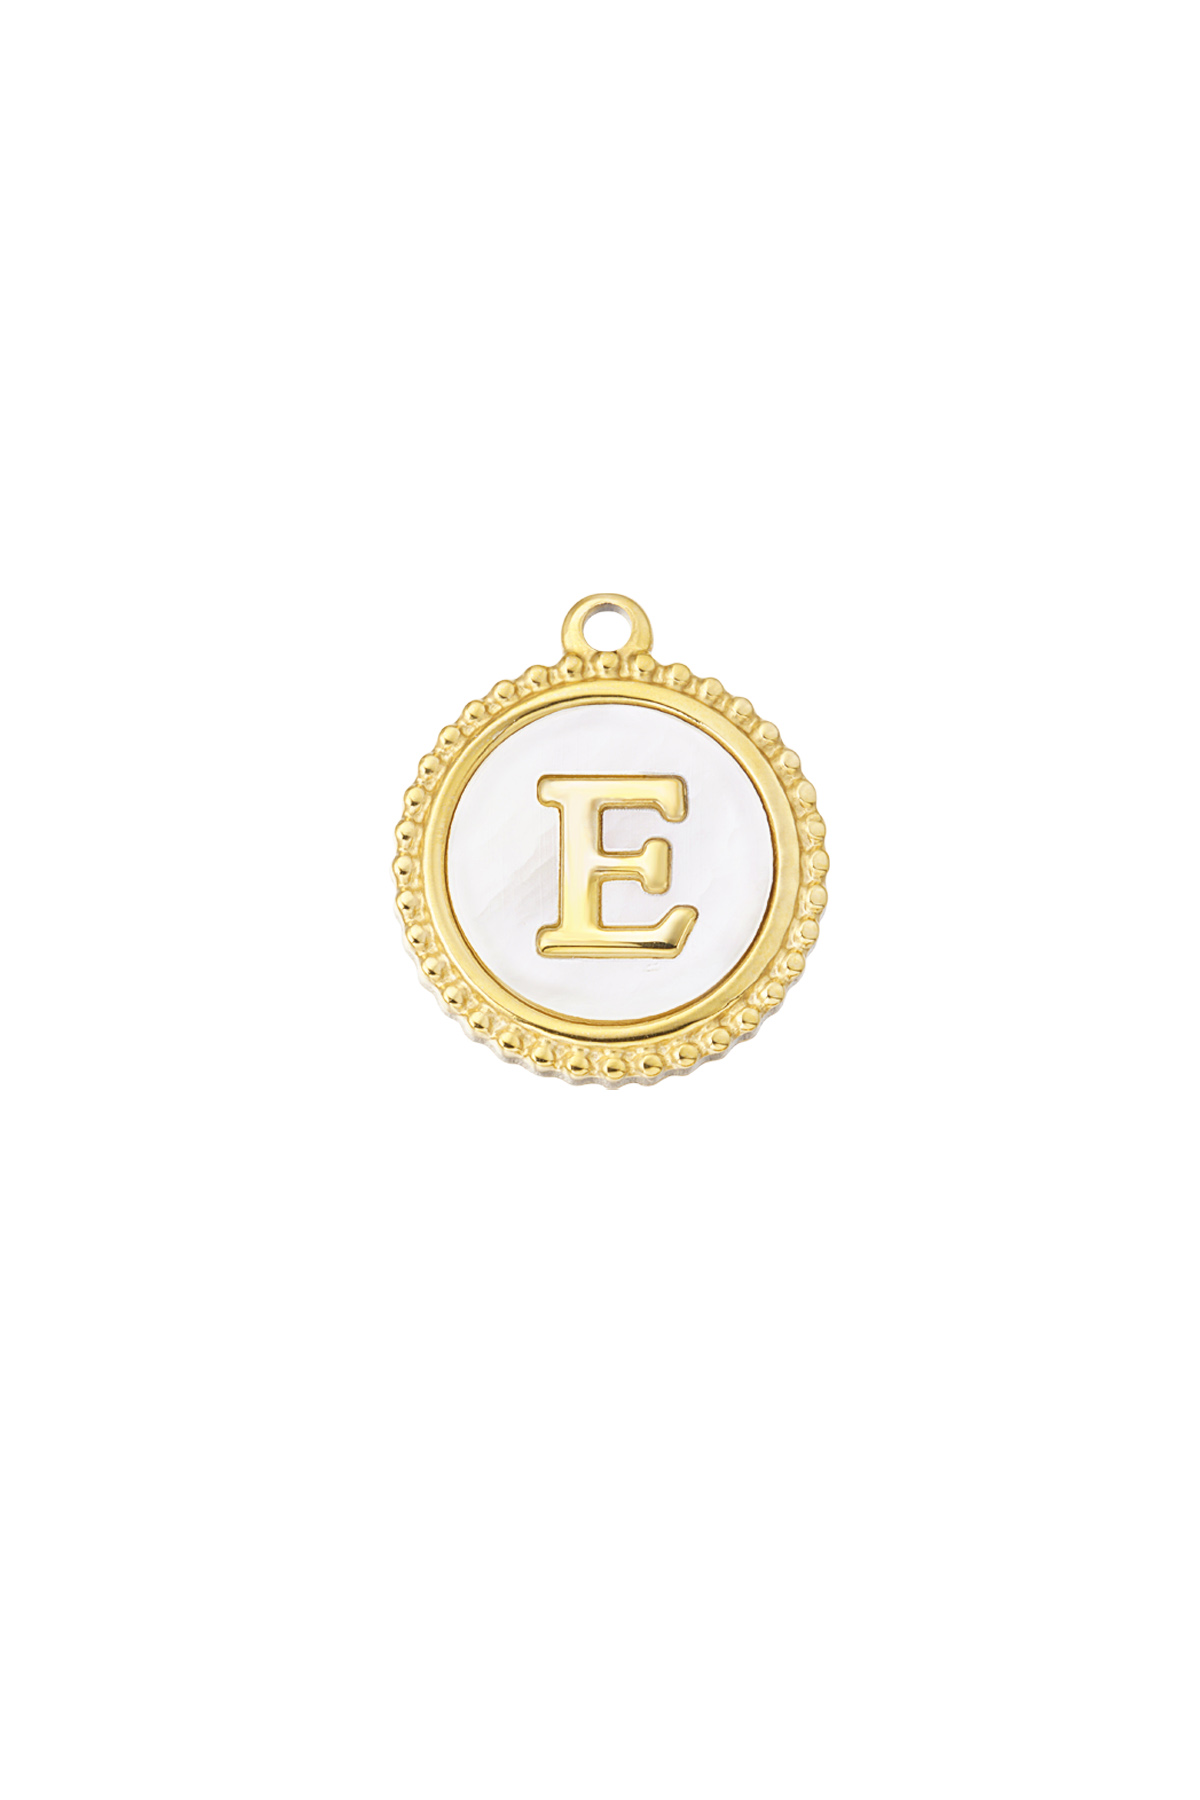 Oro / Charm elegante E - oro/blanco Imagen52